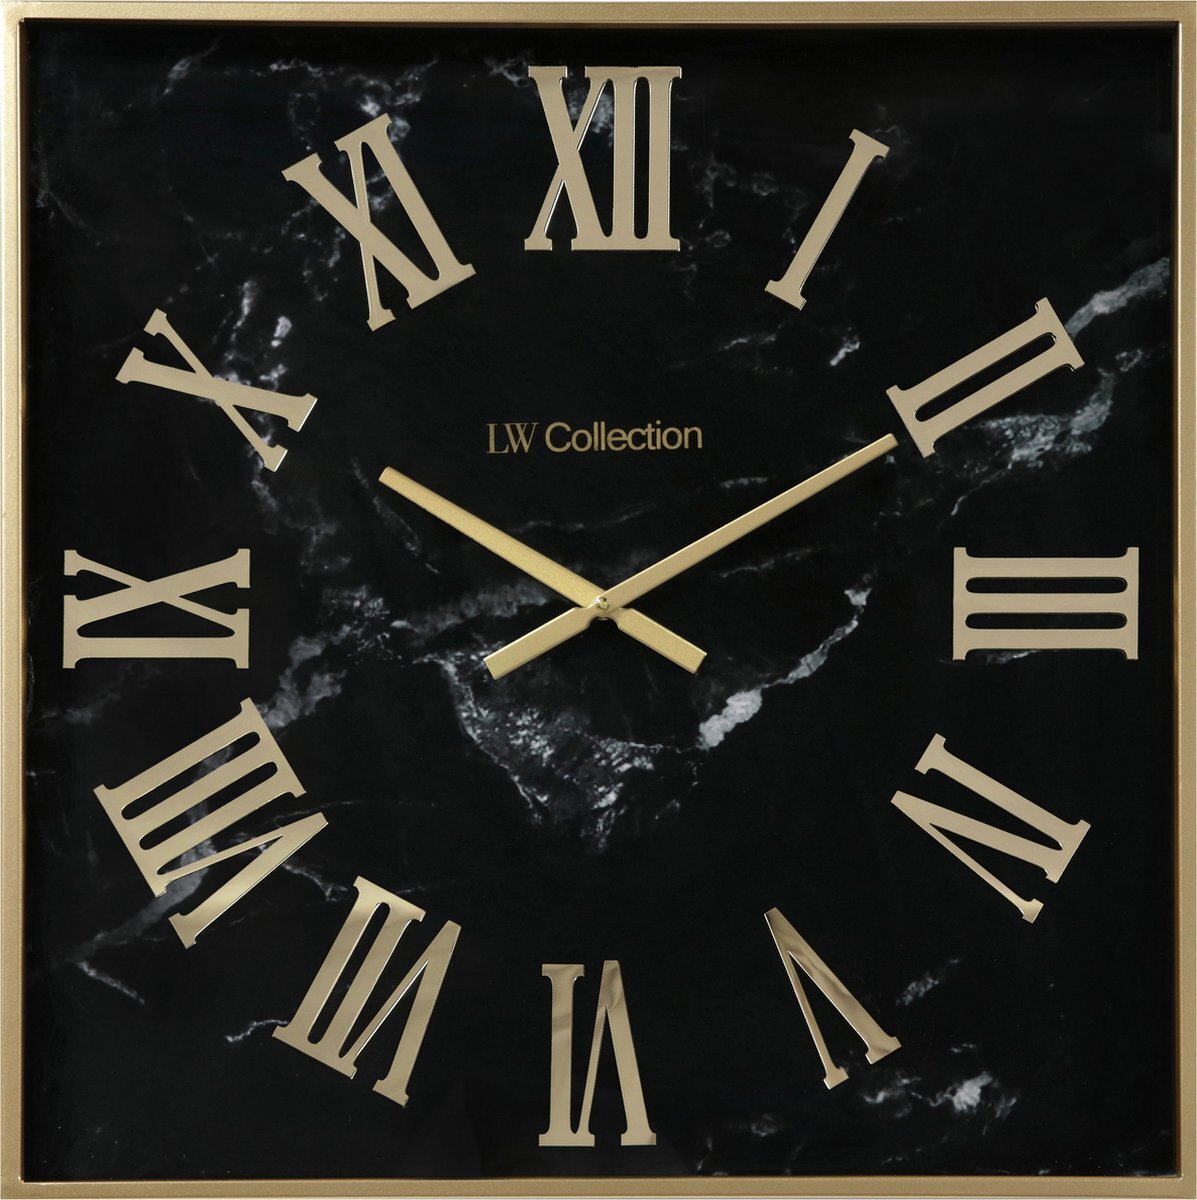 LW collection wandklok zwart goud 60cm - Grote moderne marmeren glazen klok romeinse cijfers - Vierkante muurklok glas stil uurwerk